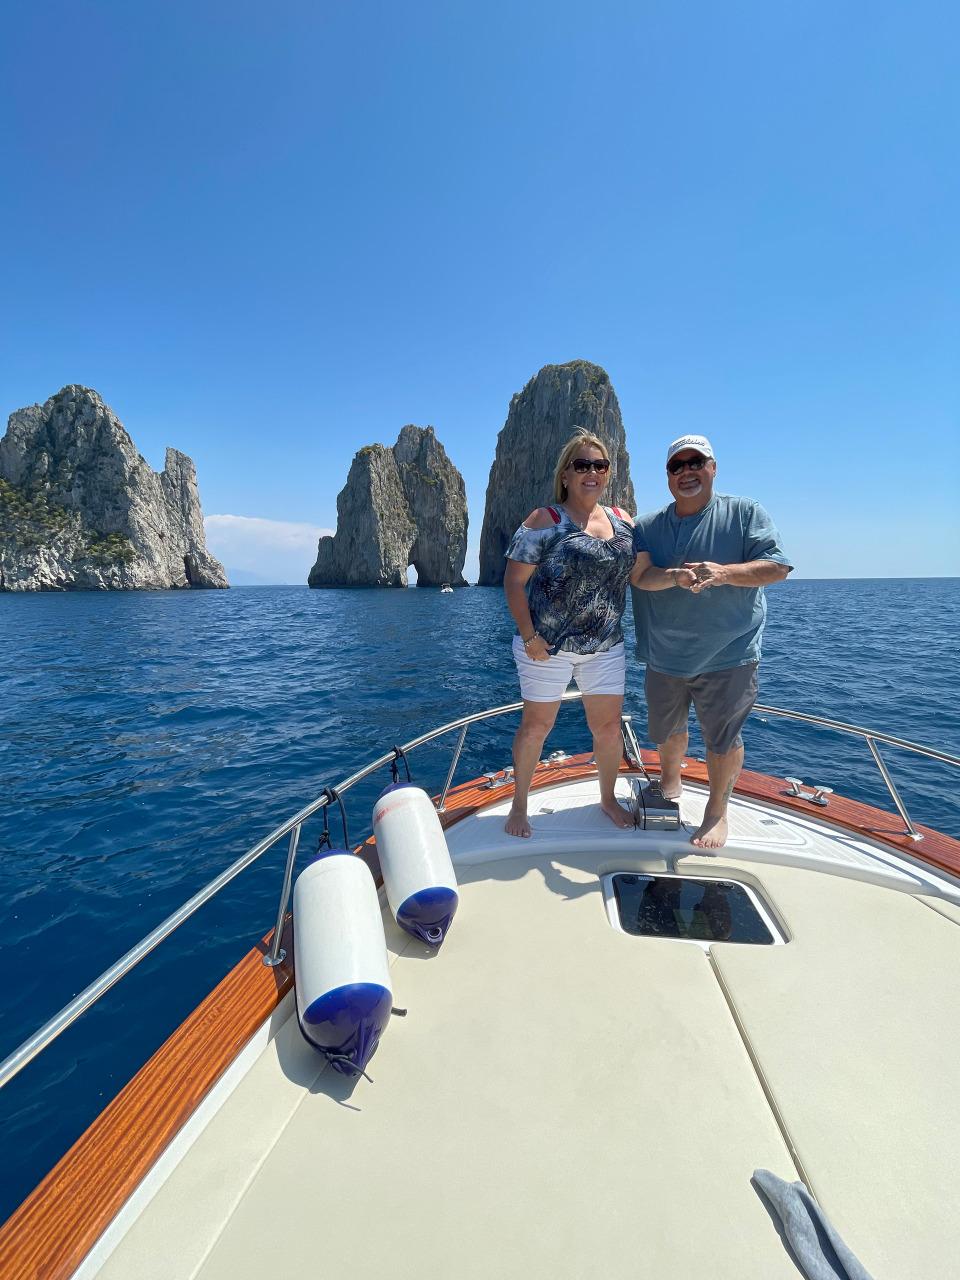 Capri and Positano By Boat-1